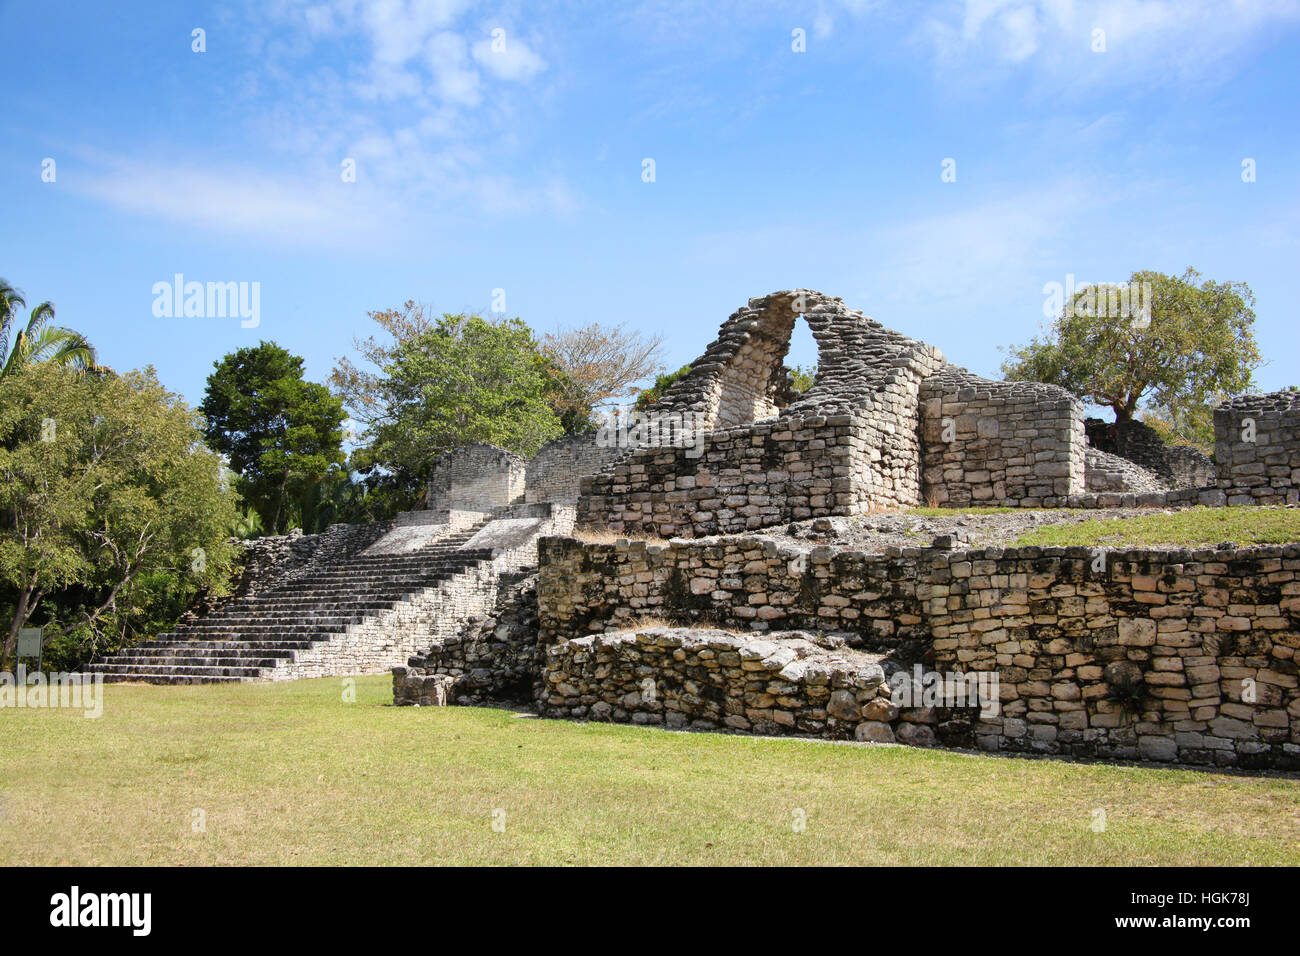 Kohunlich ist eine große archäologische Stätte der präkolumbischen Maya-Zivilisation, Yucatán Halbinsel, Quintana Roo, Mexiko. Stockfoto